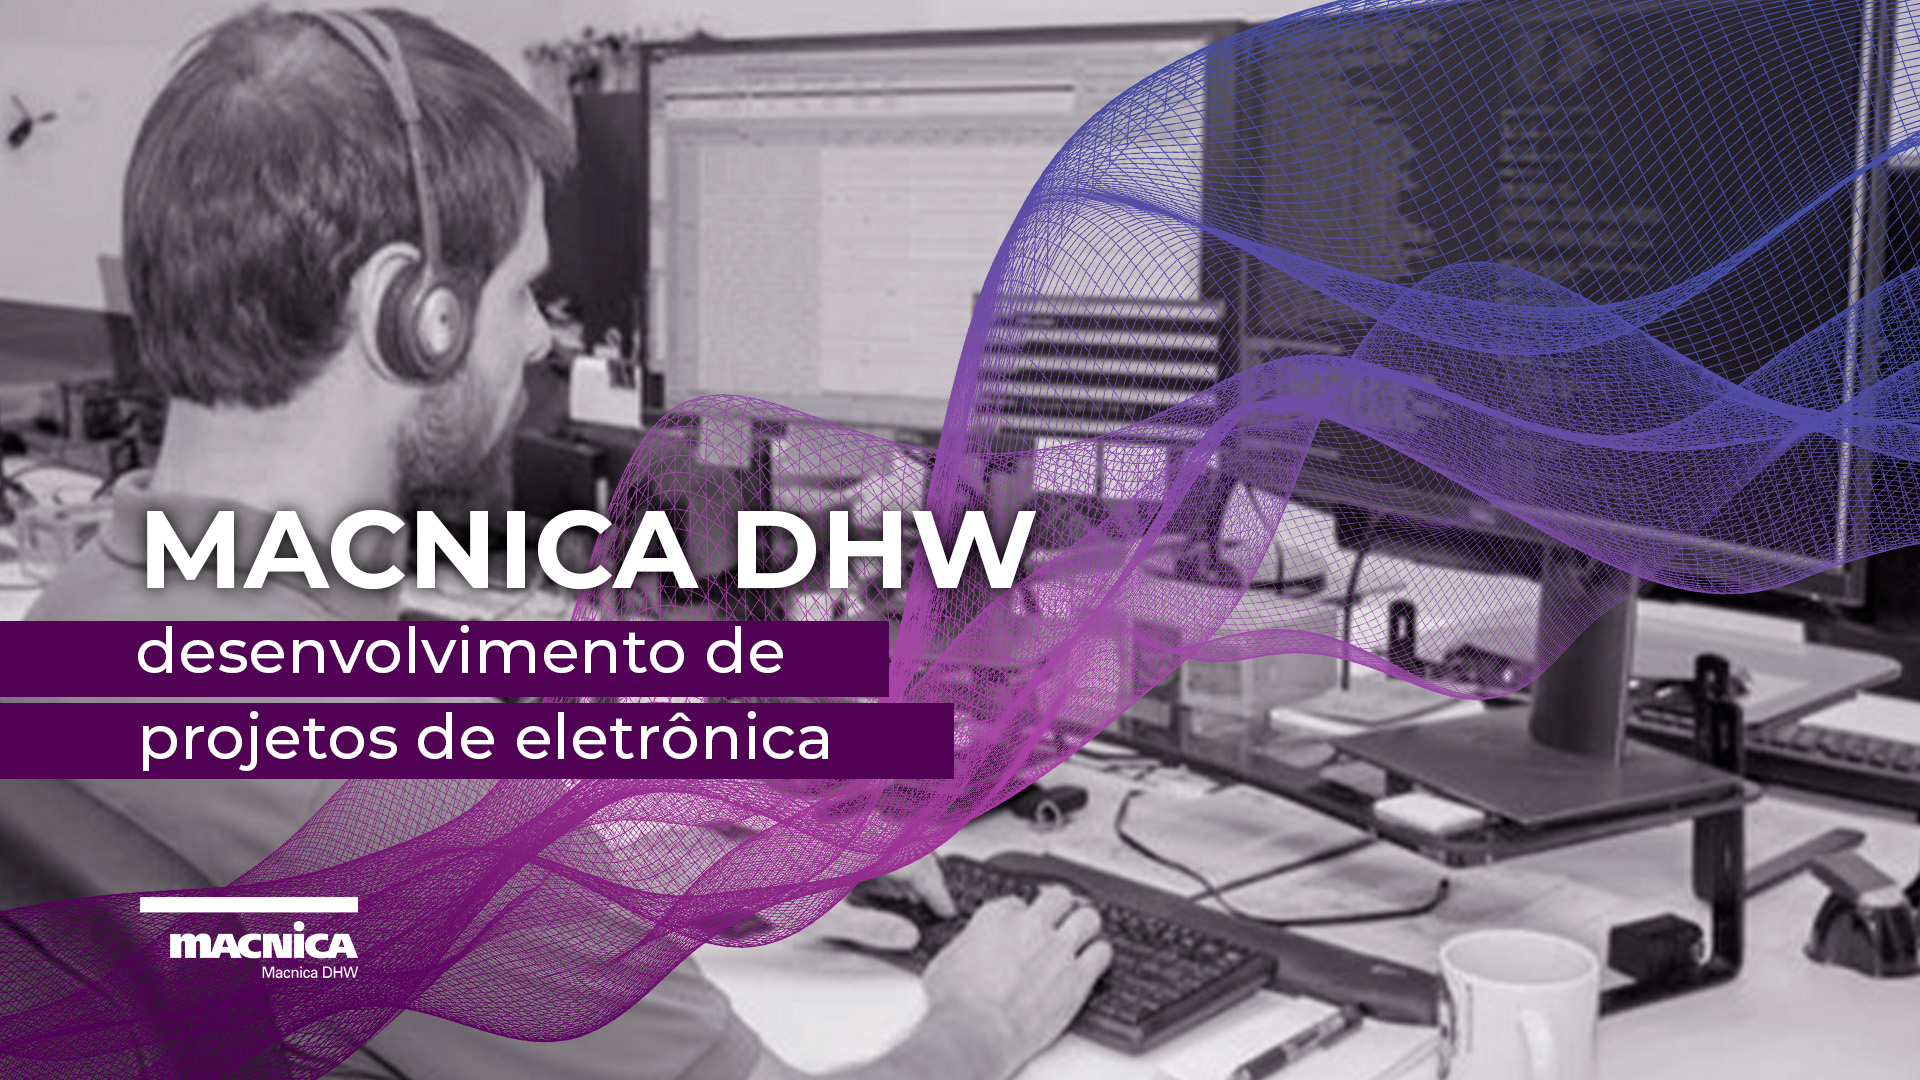 Você está visualizando atualmente Desenvolvimento de projetos de eletrônica com a Macnica DHW